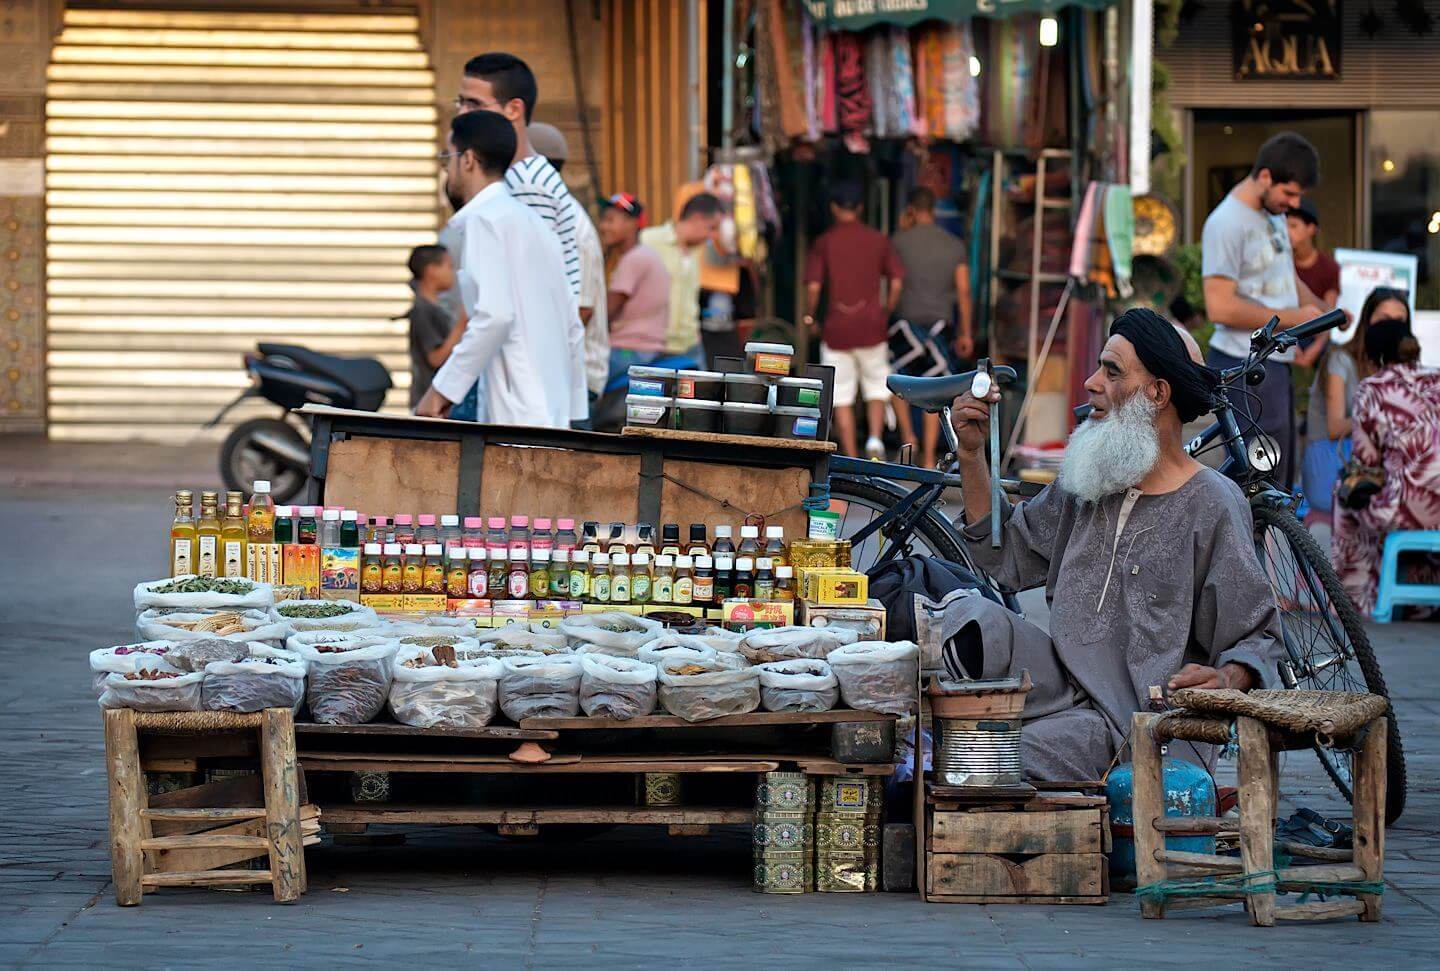 Starý muž s plnovousem prodává věci na ulici; Marrákeš